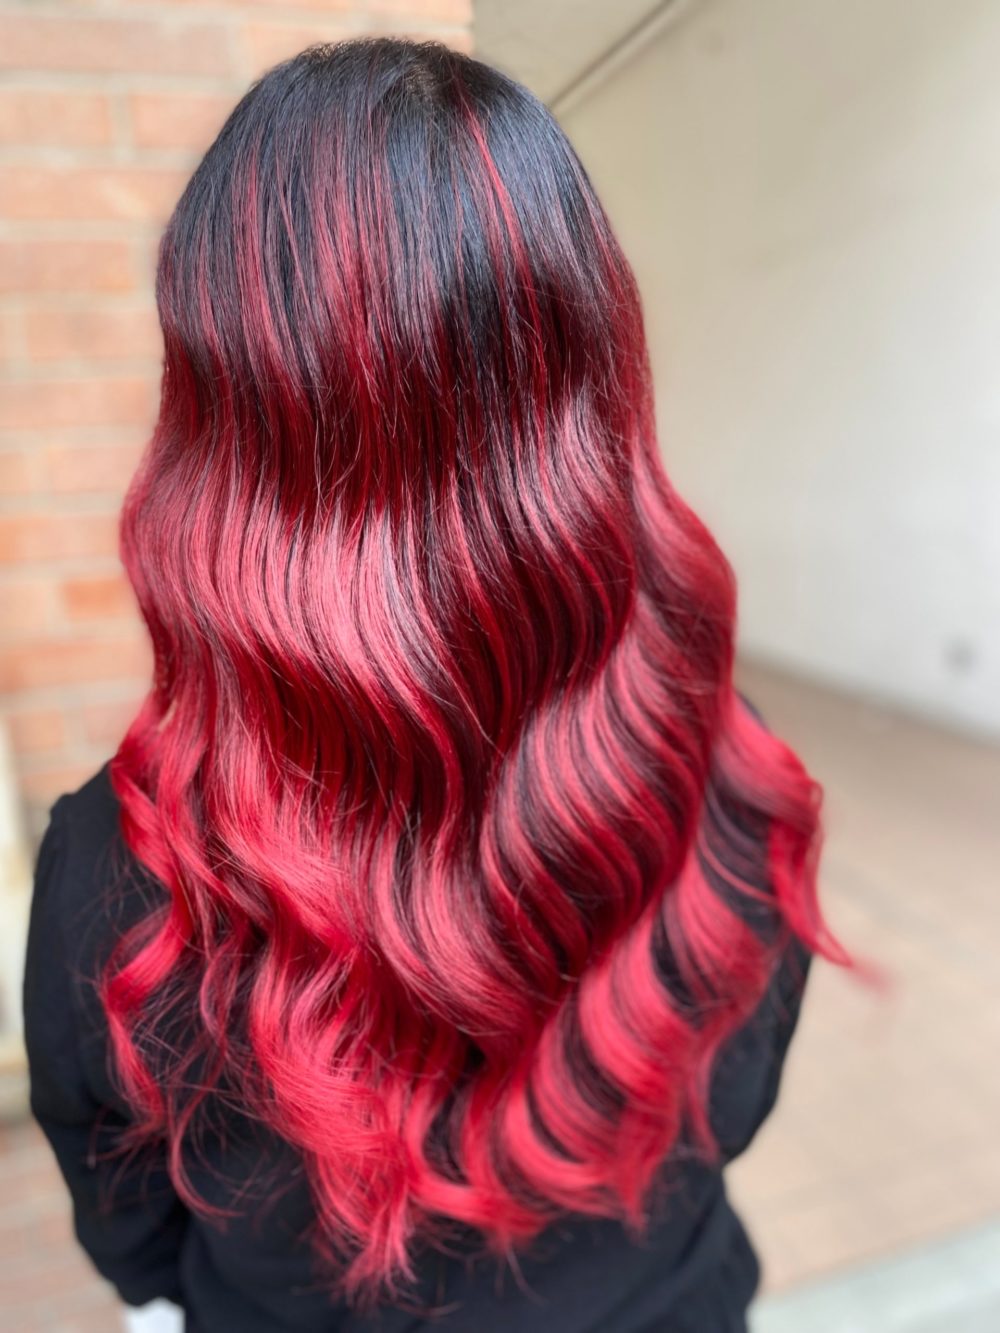 Bijproduct Sandalen Aap 20 Flatterende rode highlights om je kleur een boost te geven - Dutch  Hairshop